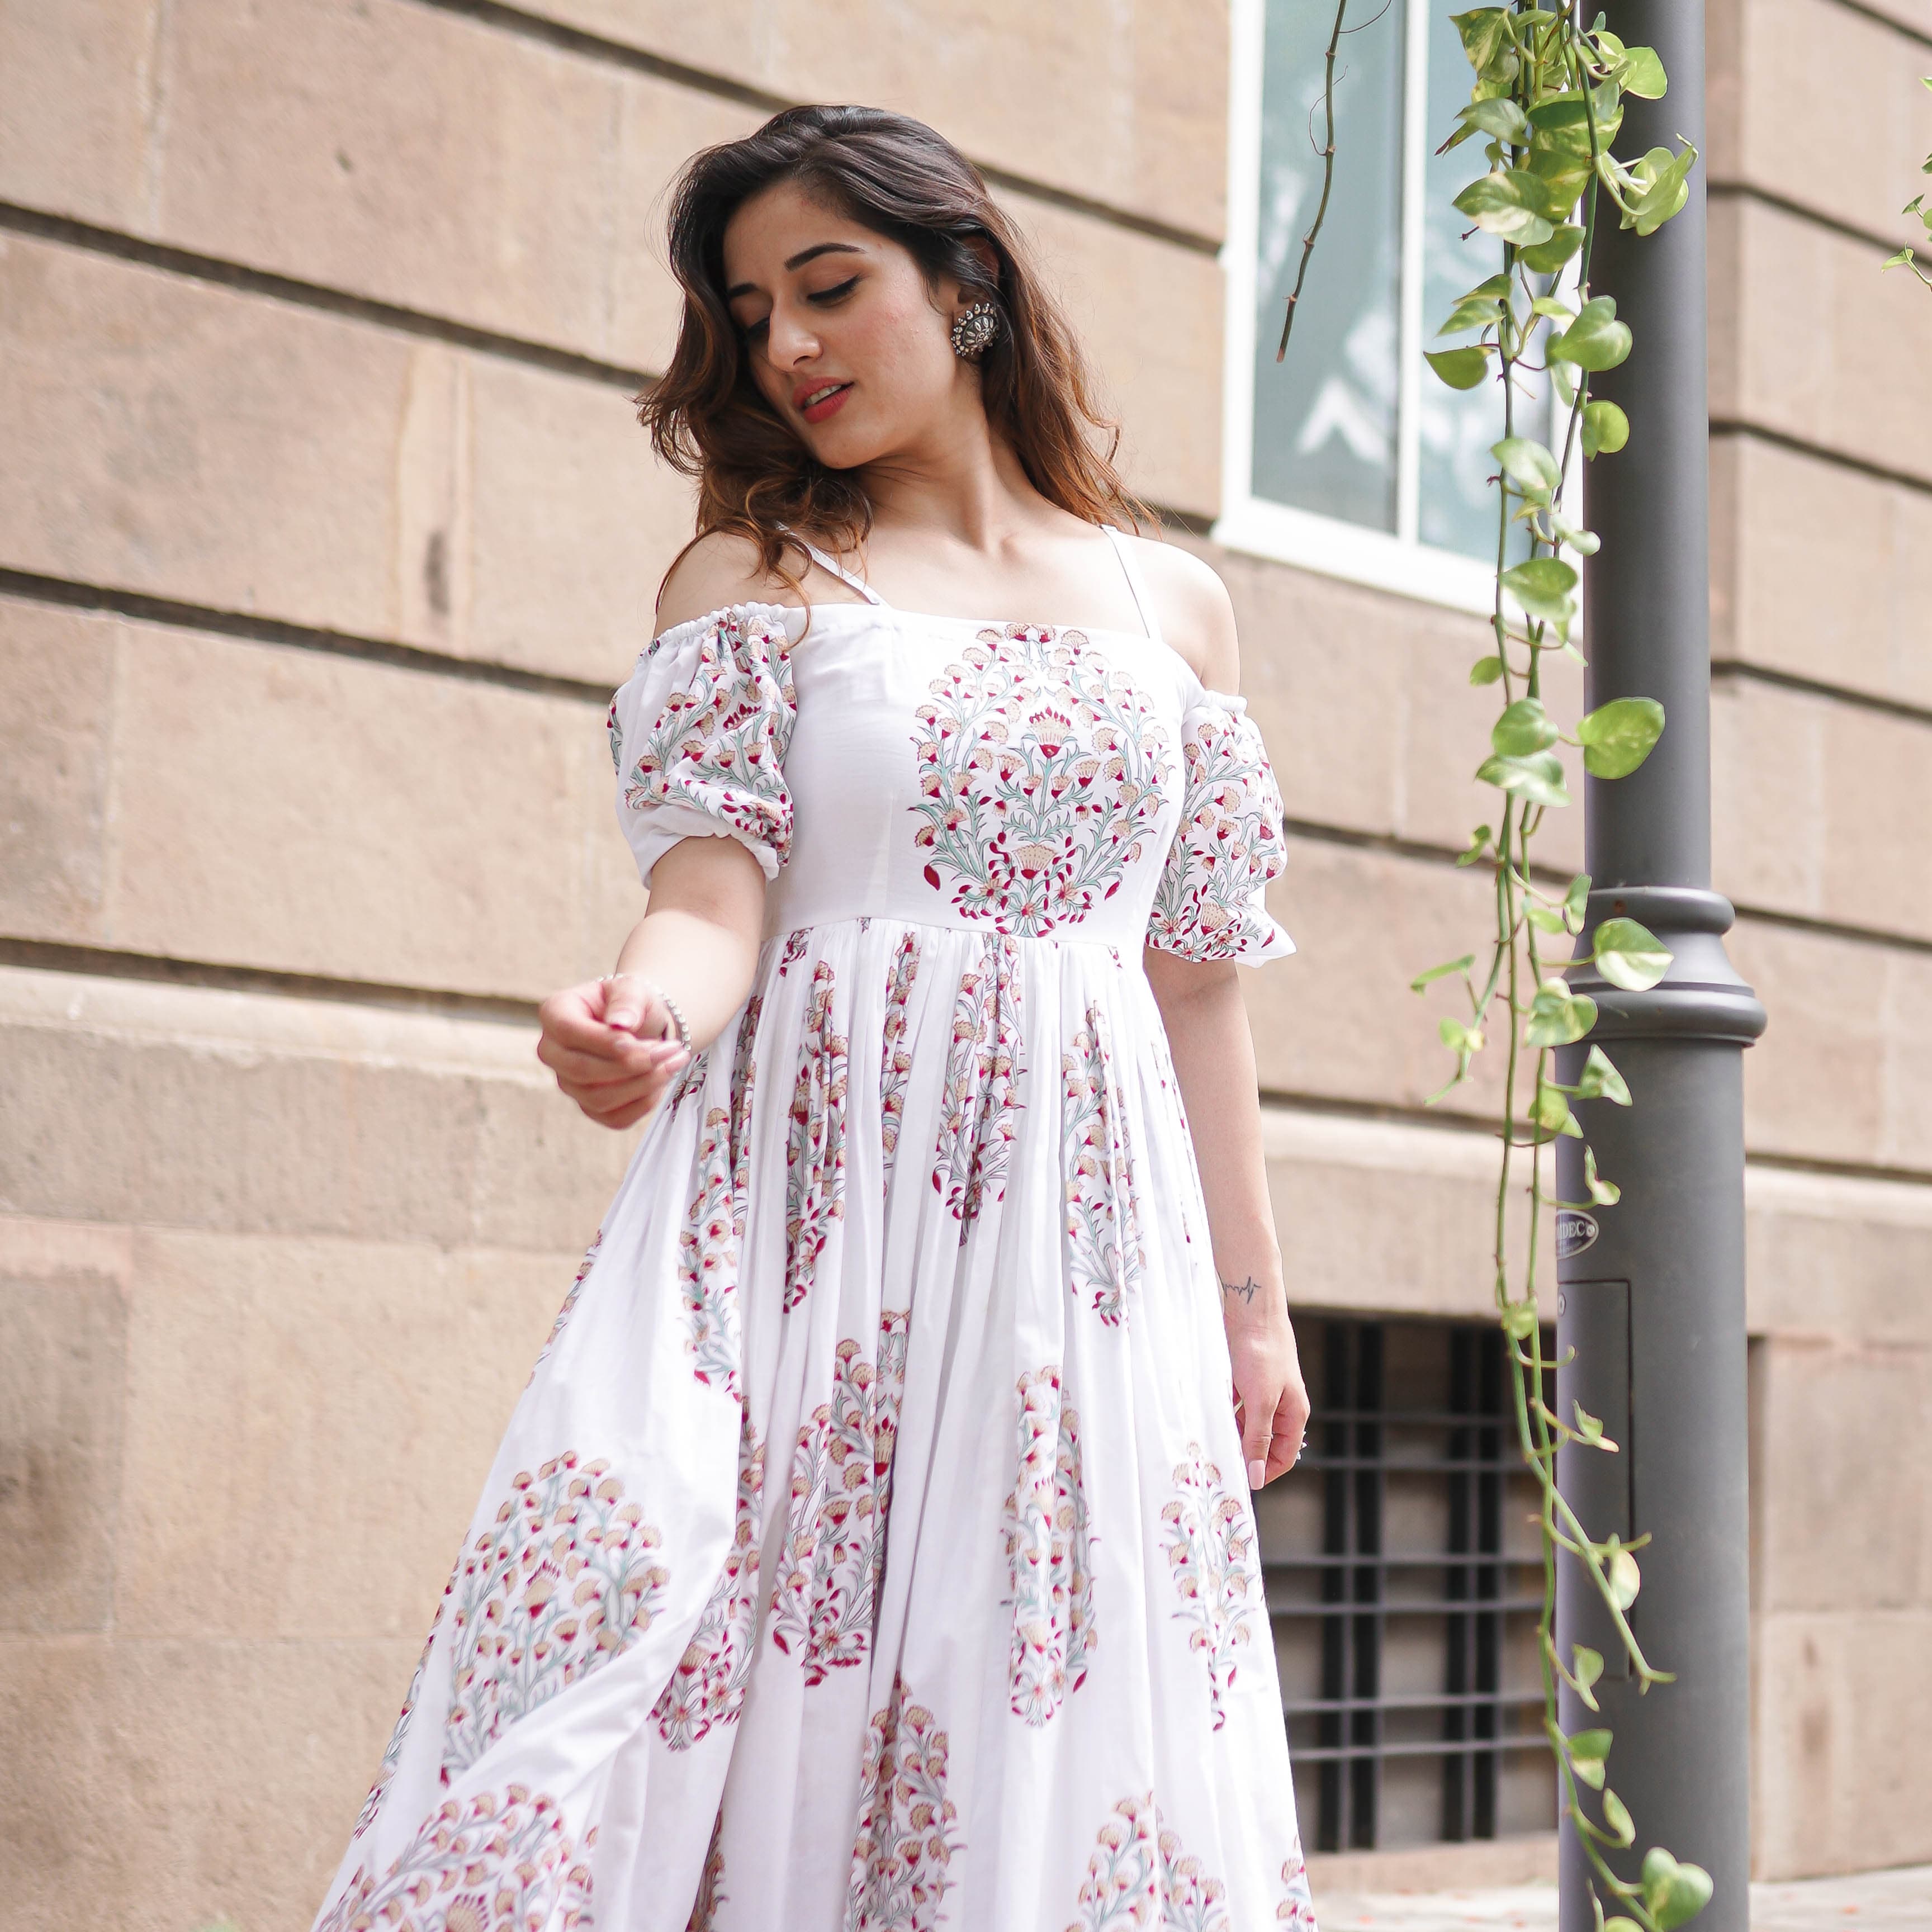 Nyra White Cotton Maxi Dress For Women Online